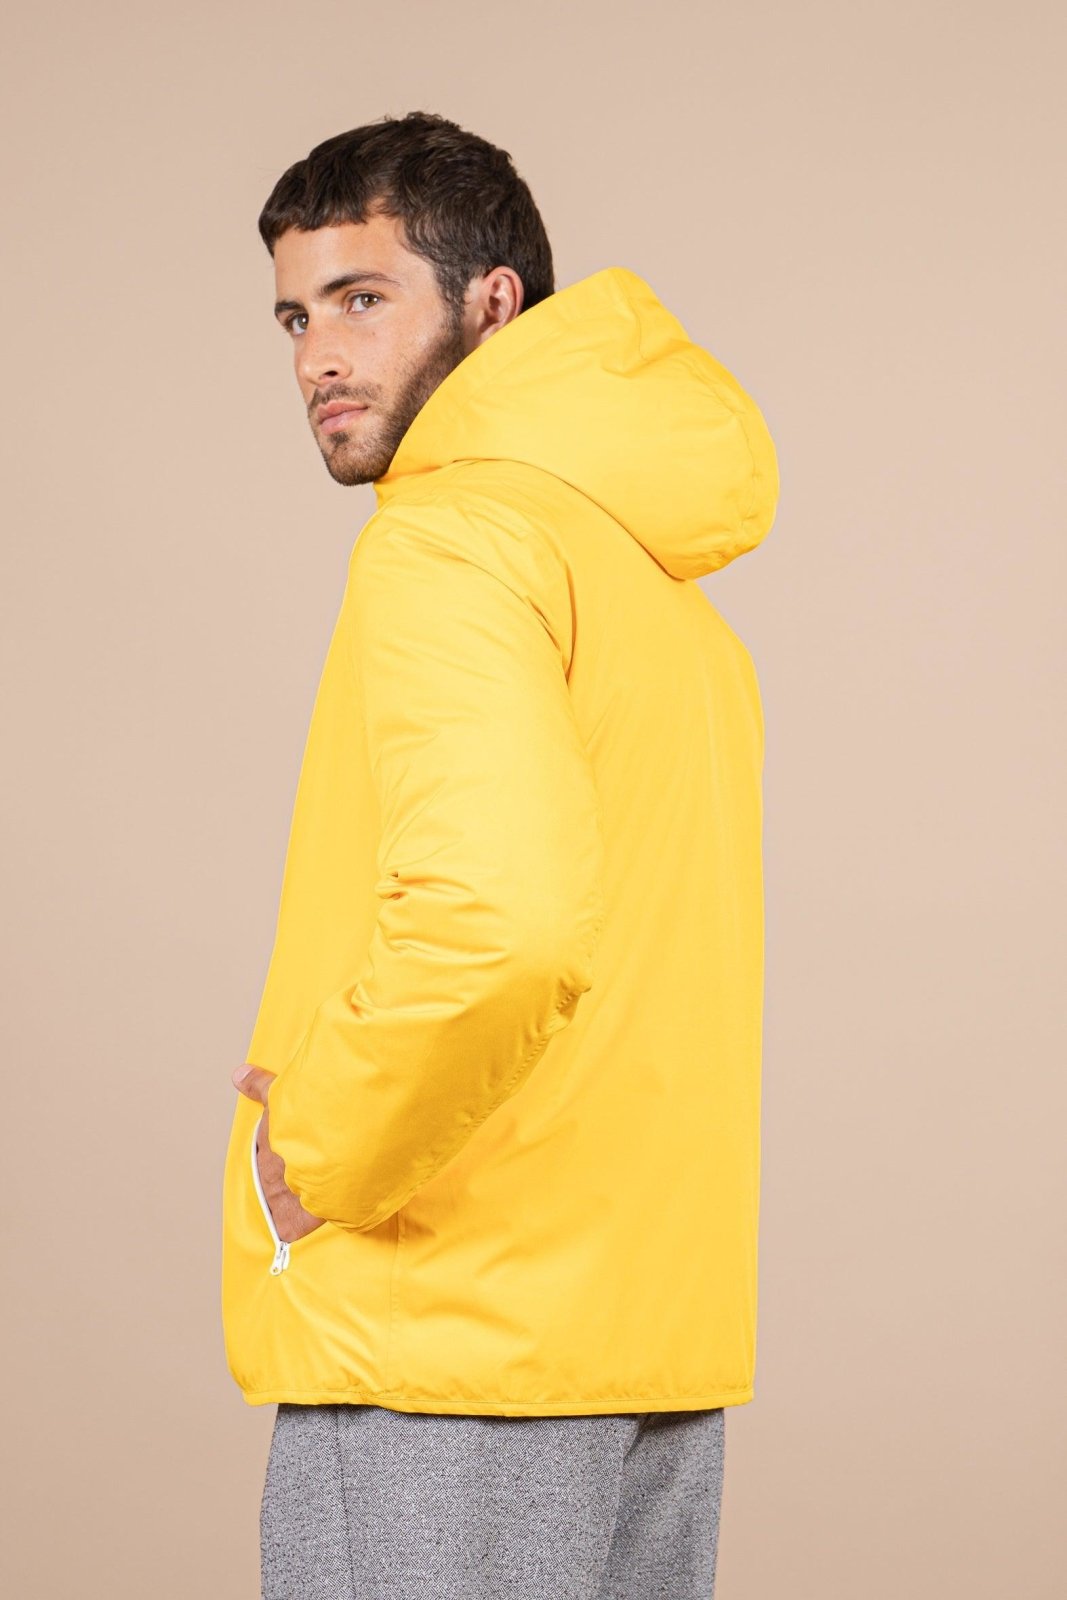 Charonne - Reversible down jacket - Flotte #couleur_citron-indigo